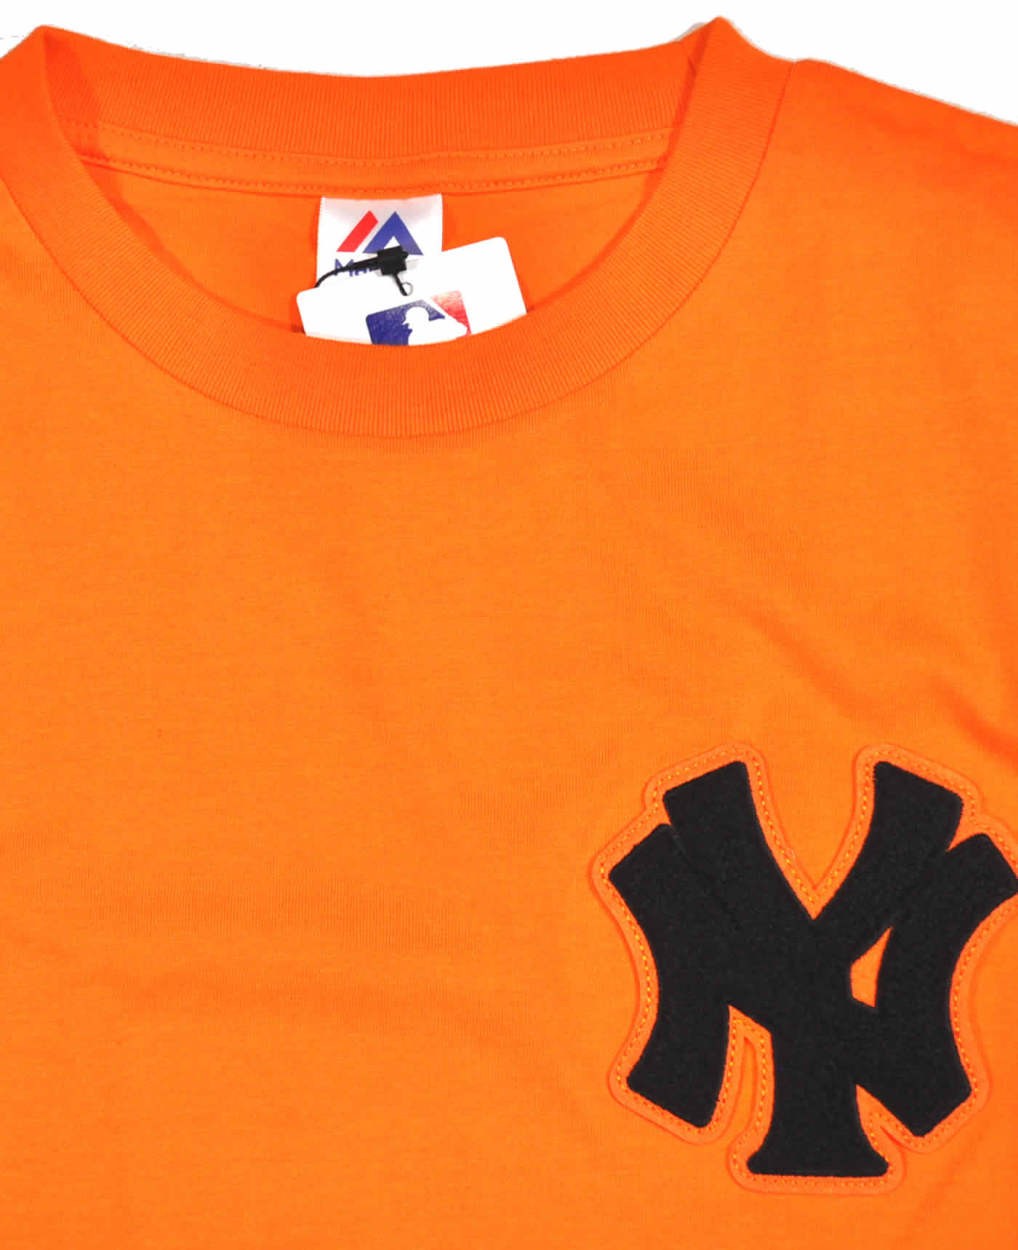 ヤンキース Tシャツ BIGシルエット カラーTシャツ サガラ刺繍 MAJESTIC マジェスティッ...